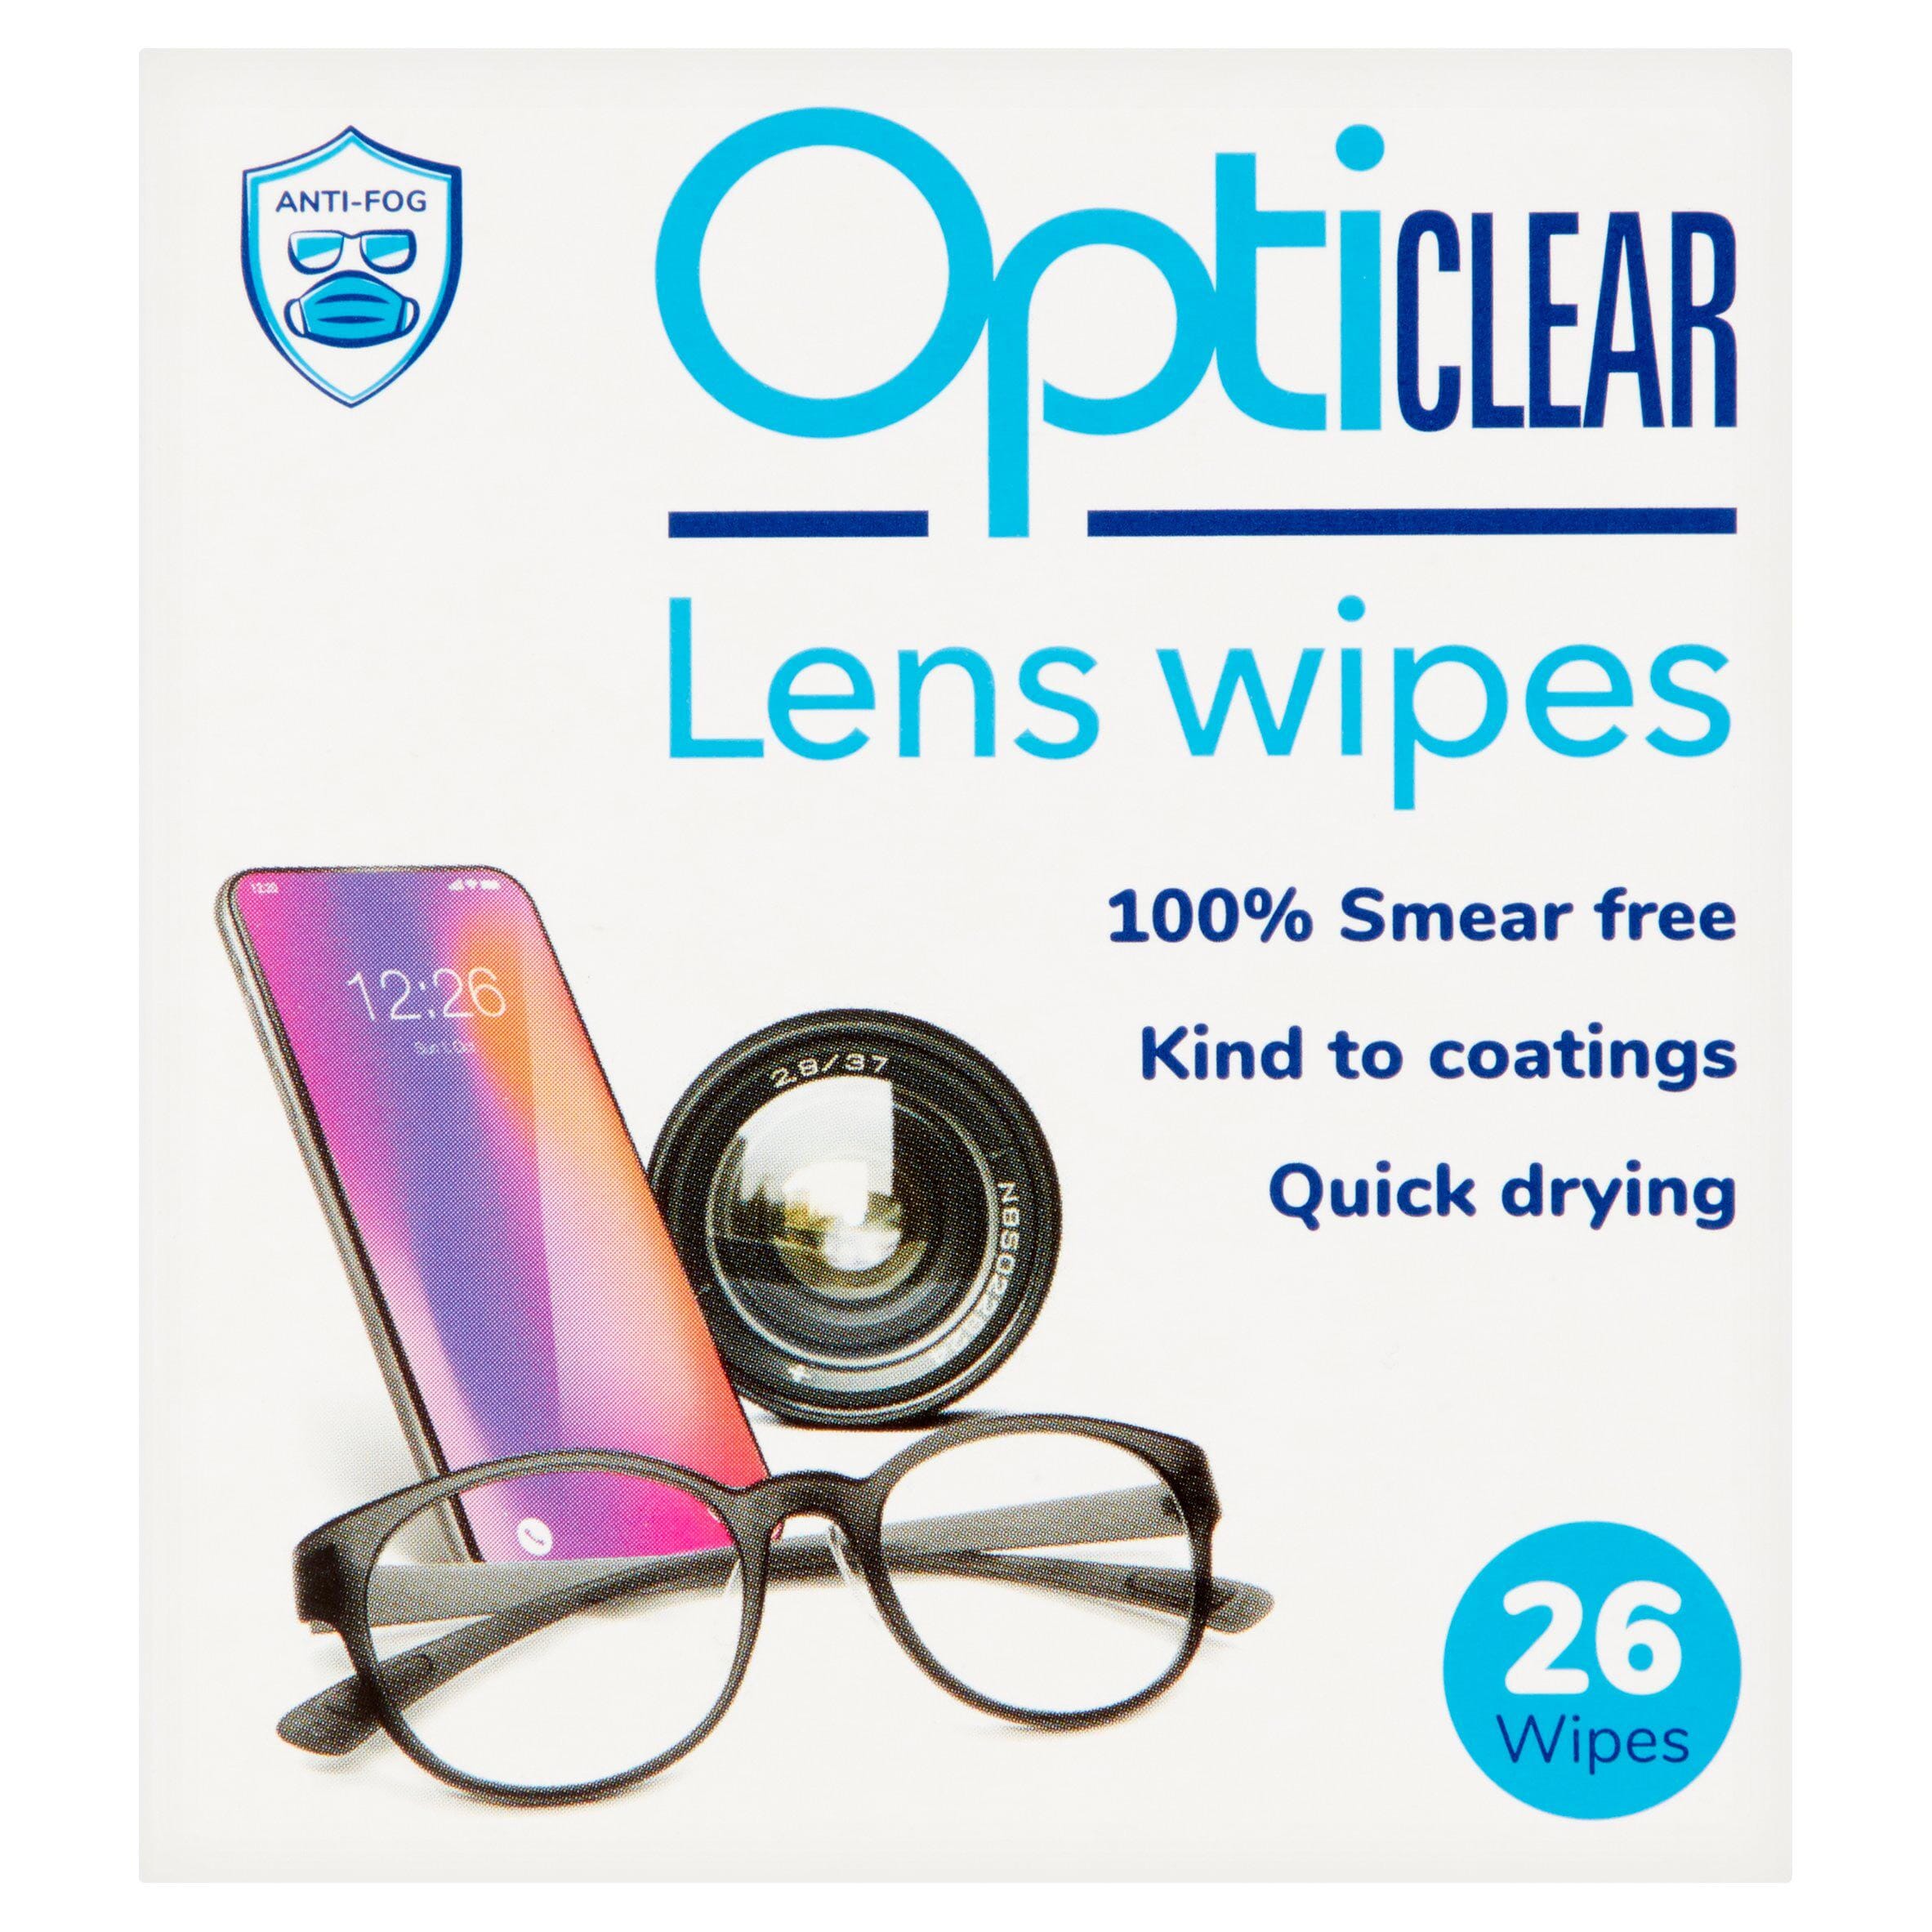 OptiPlus Lot de 30 lingettes de nettoyage anti-buée pour lunettes –  Nettoyage en douceur et en profondeur de vos verres de lunettes –  Protection